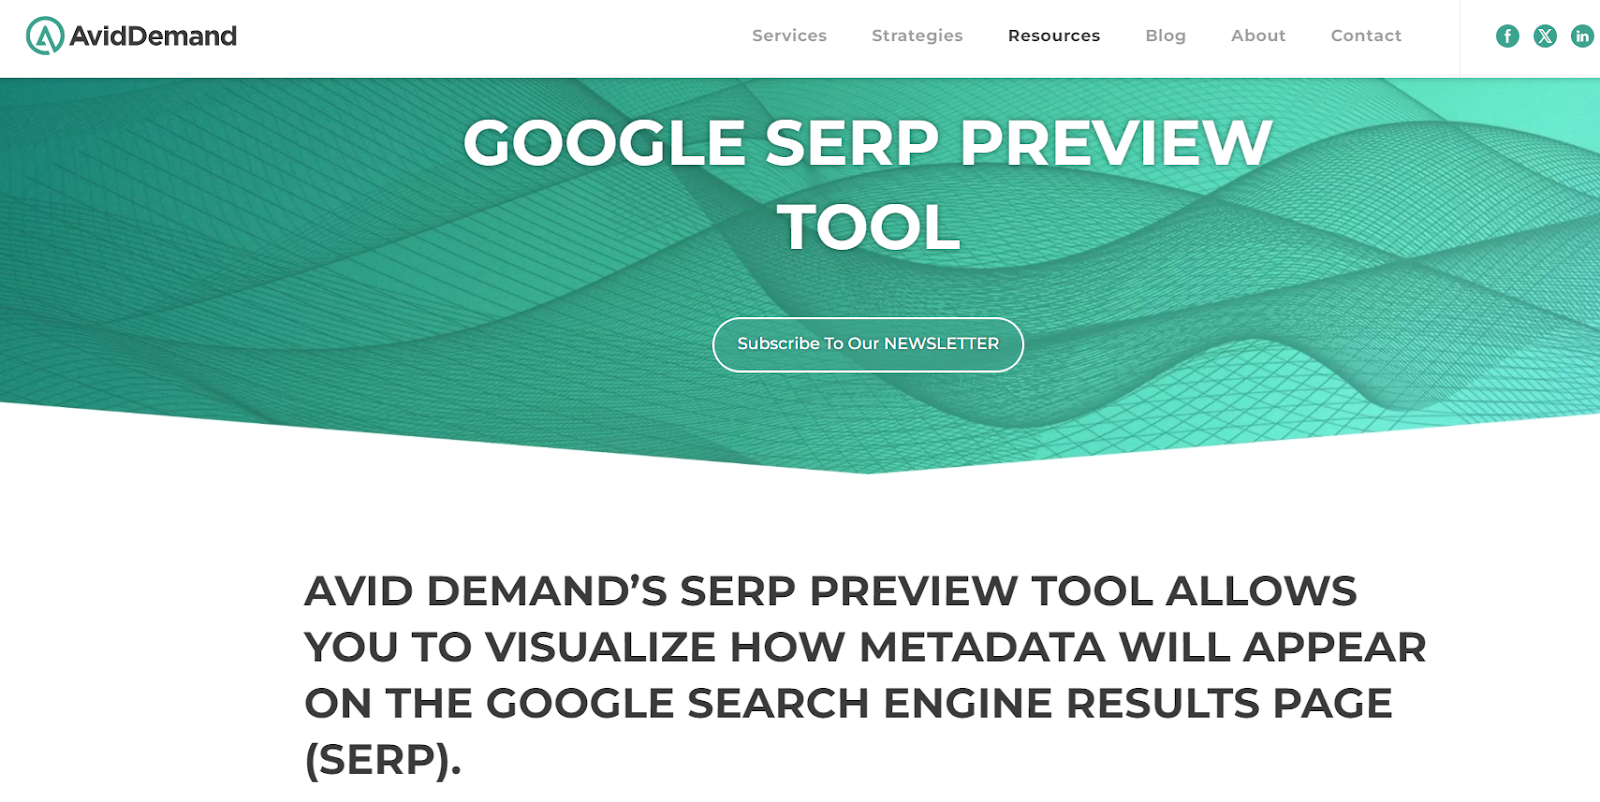 Google SERP Preview